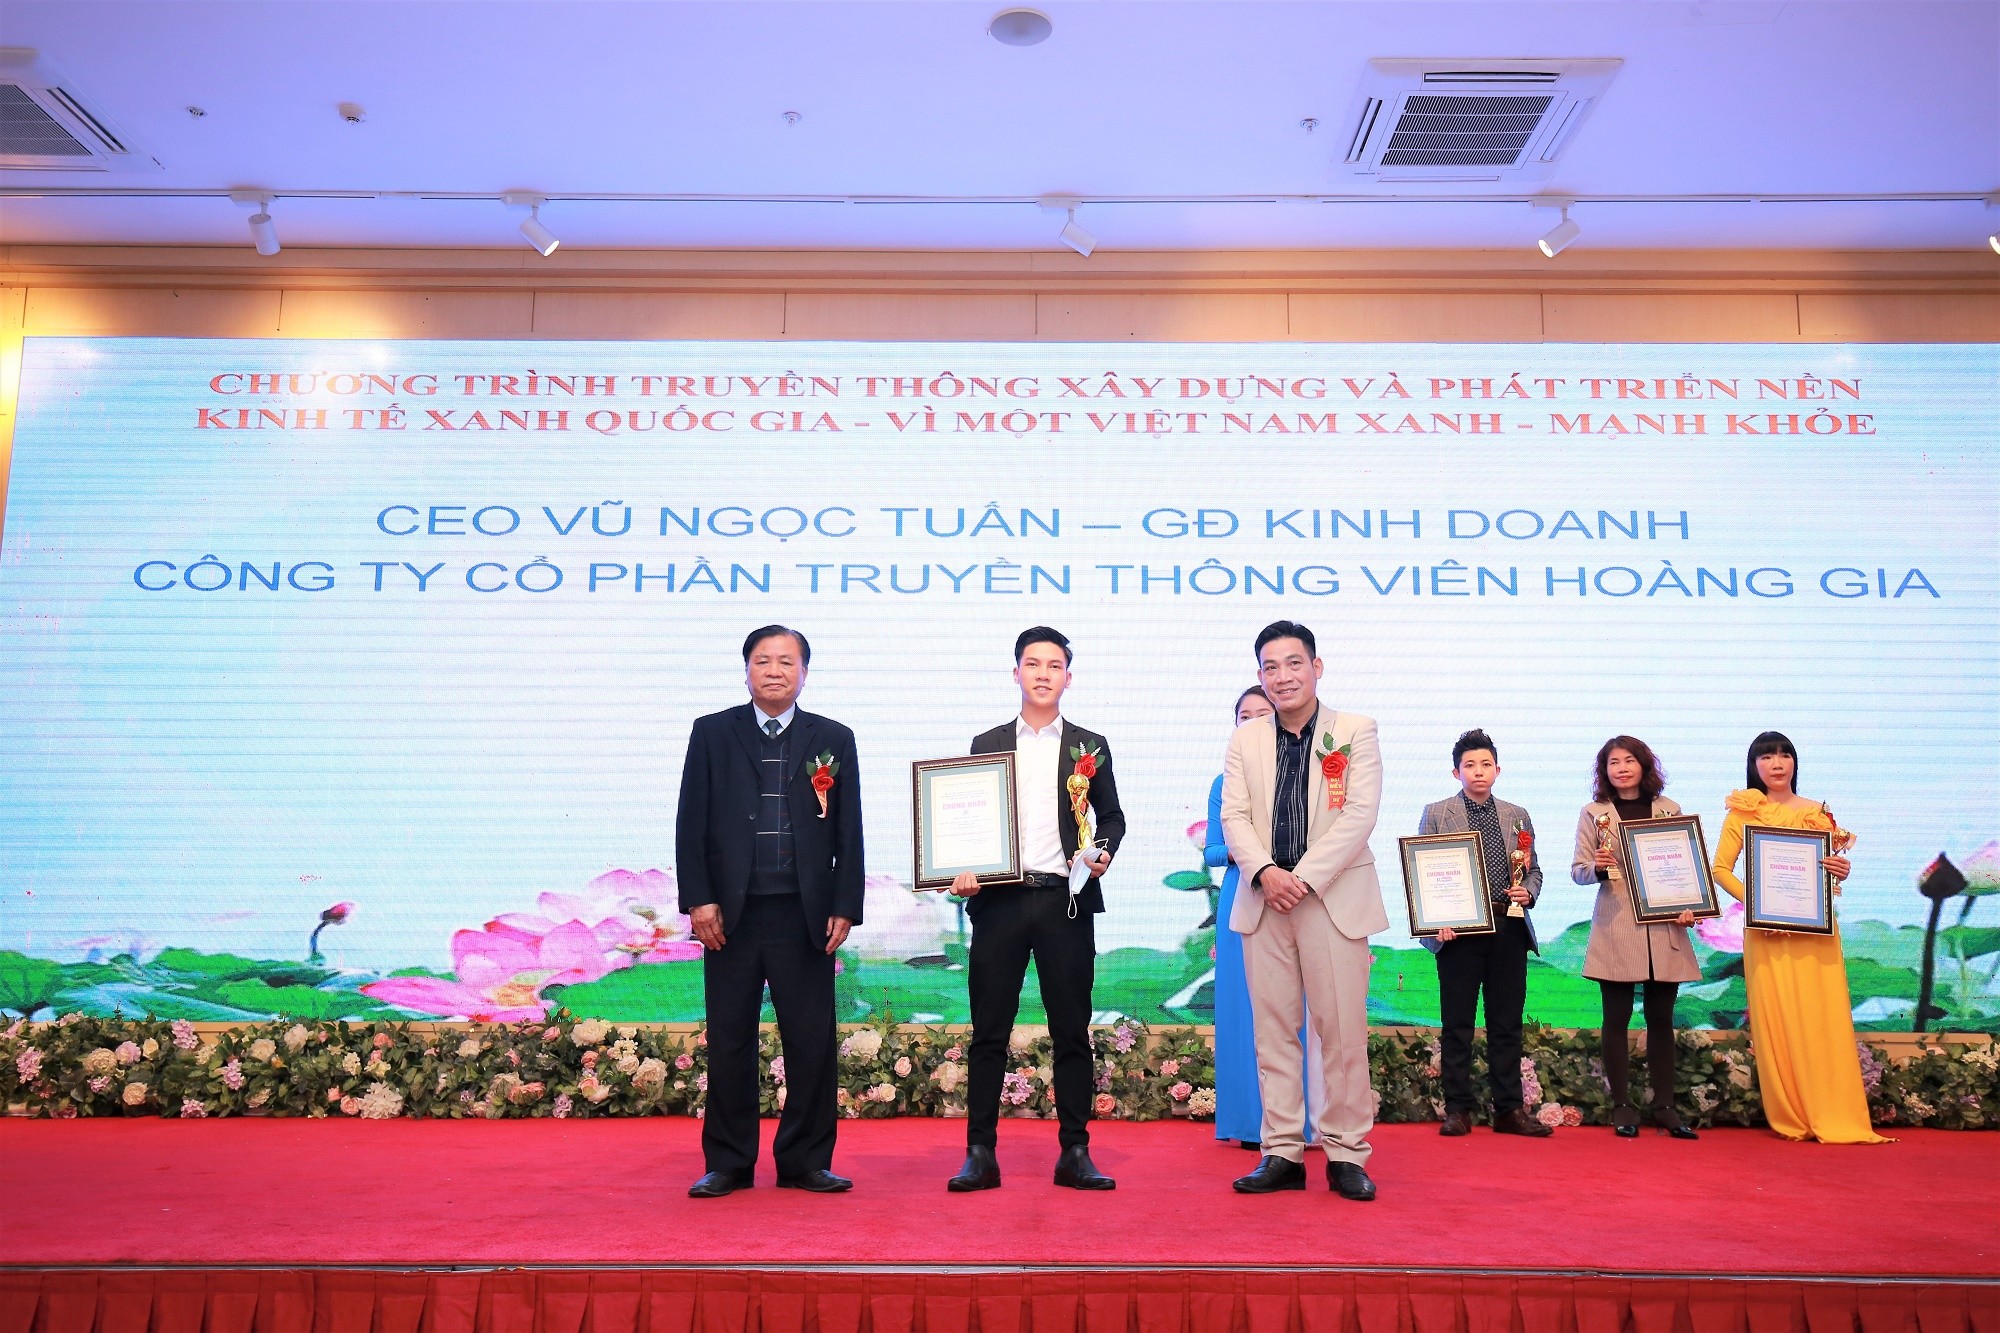 CEO Vũ Ngọc Tuấn - một trong những nhân vật thành công nhất trong lĩnh vực quản trị doanh nghiệp tại Việt Nam. Với tài năng, nhạy bén và sự lãnh đạo tài tình, ông đã mang lại nhiều thành công cho các doanh nghiệp mình lãnh đạo. Nếu bạn cảm thấy bị thôi thúc bởi thành công của ông, hãy xem hình ảnh liên quan đến CEO Vũ Ngọc Tuấn.